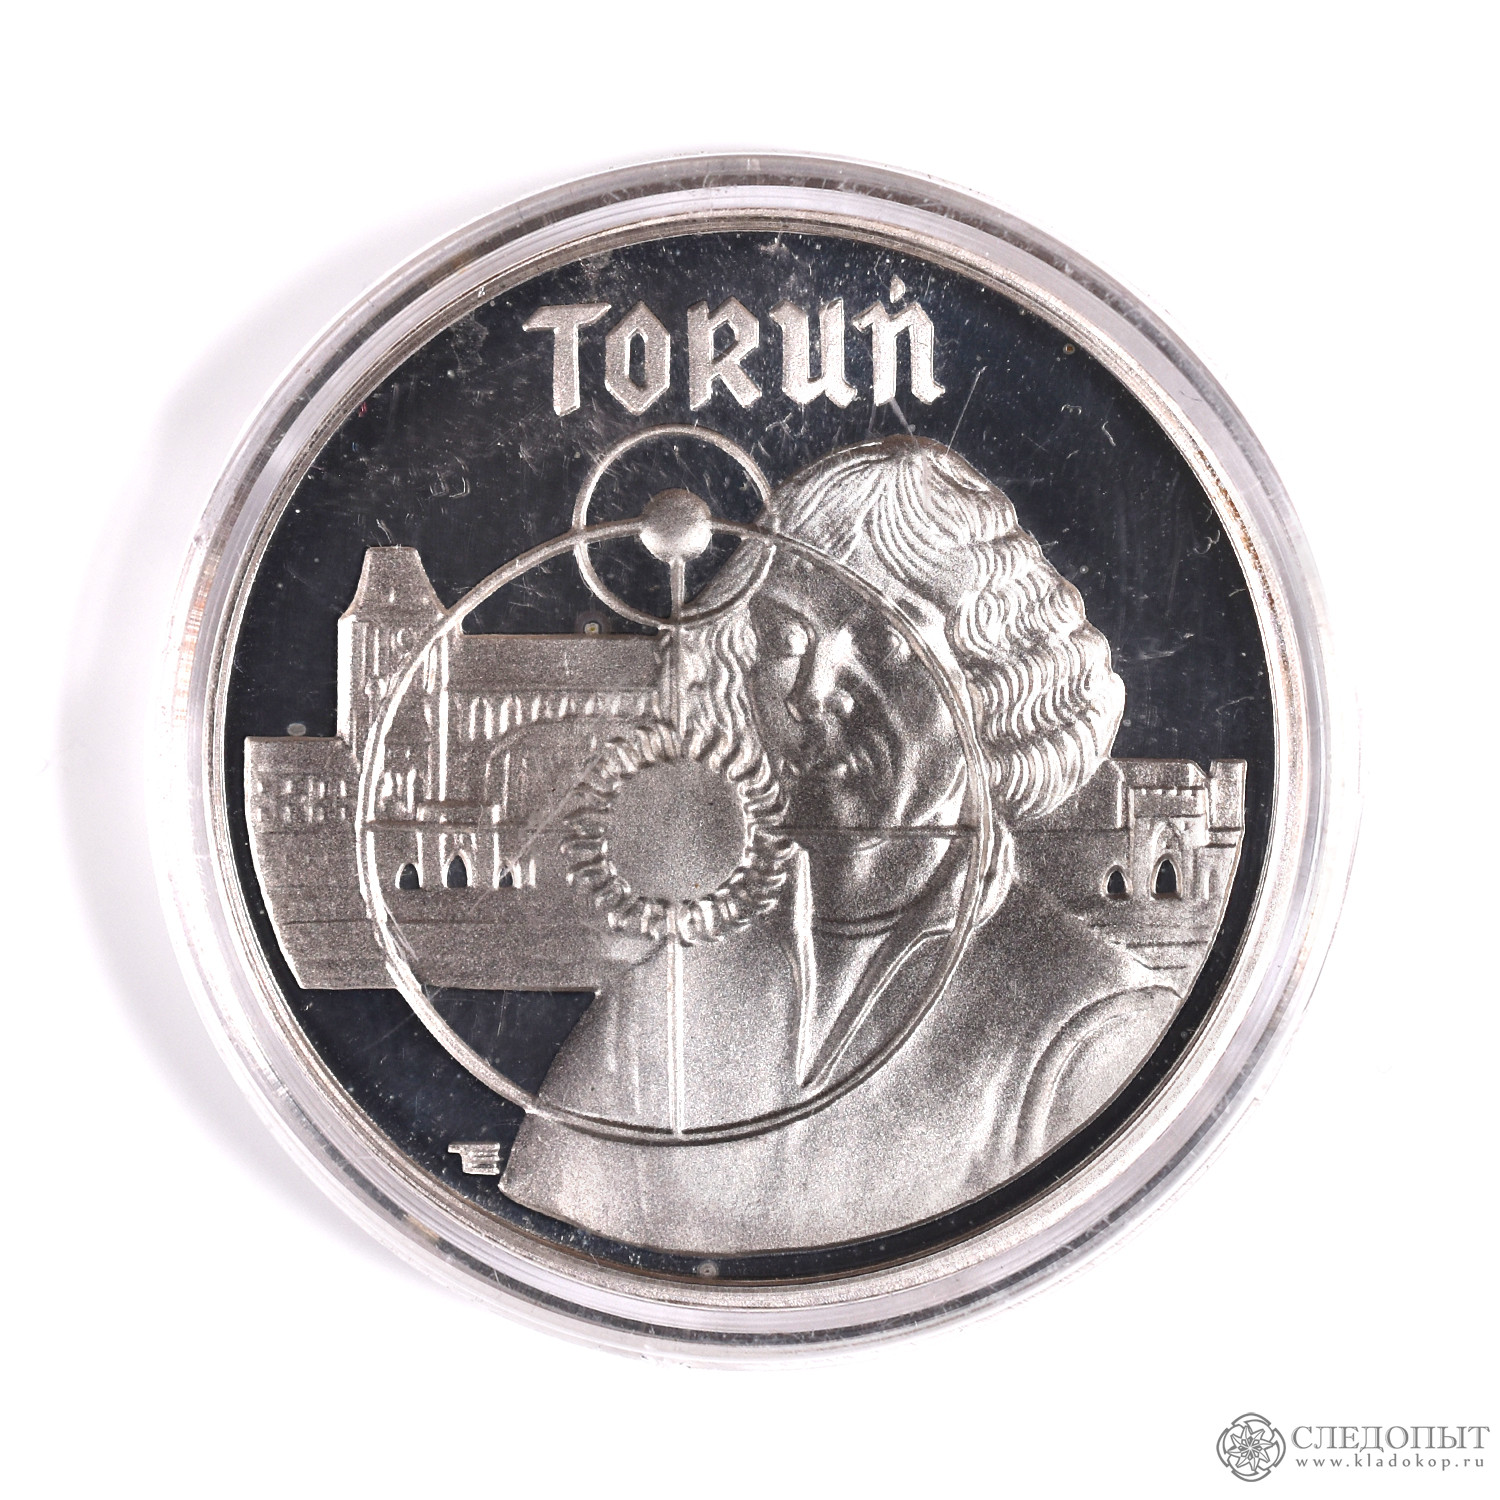 5000 злотых в рублях. Коллекция польских монет. Польша 1990. Moneta Pol:td.